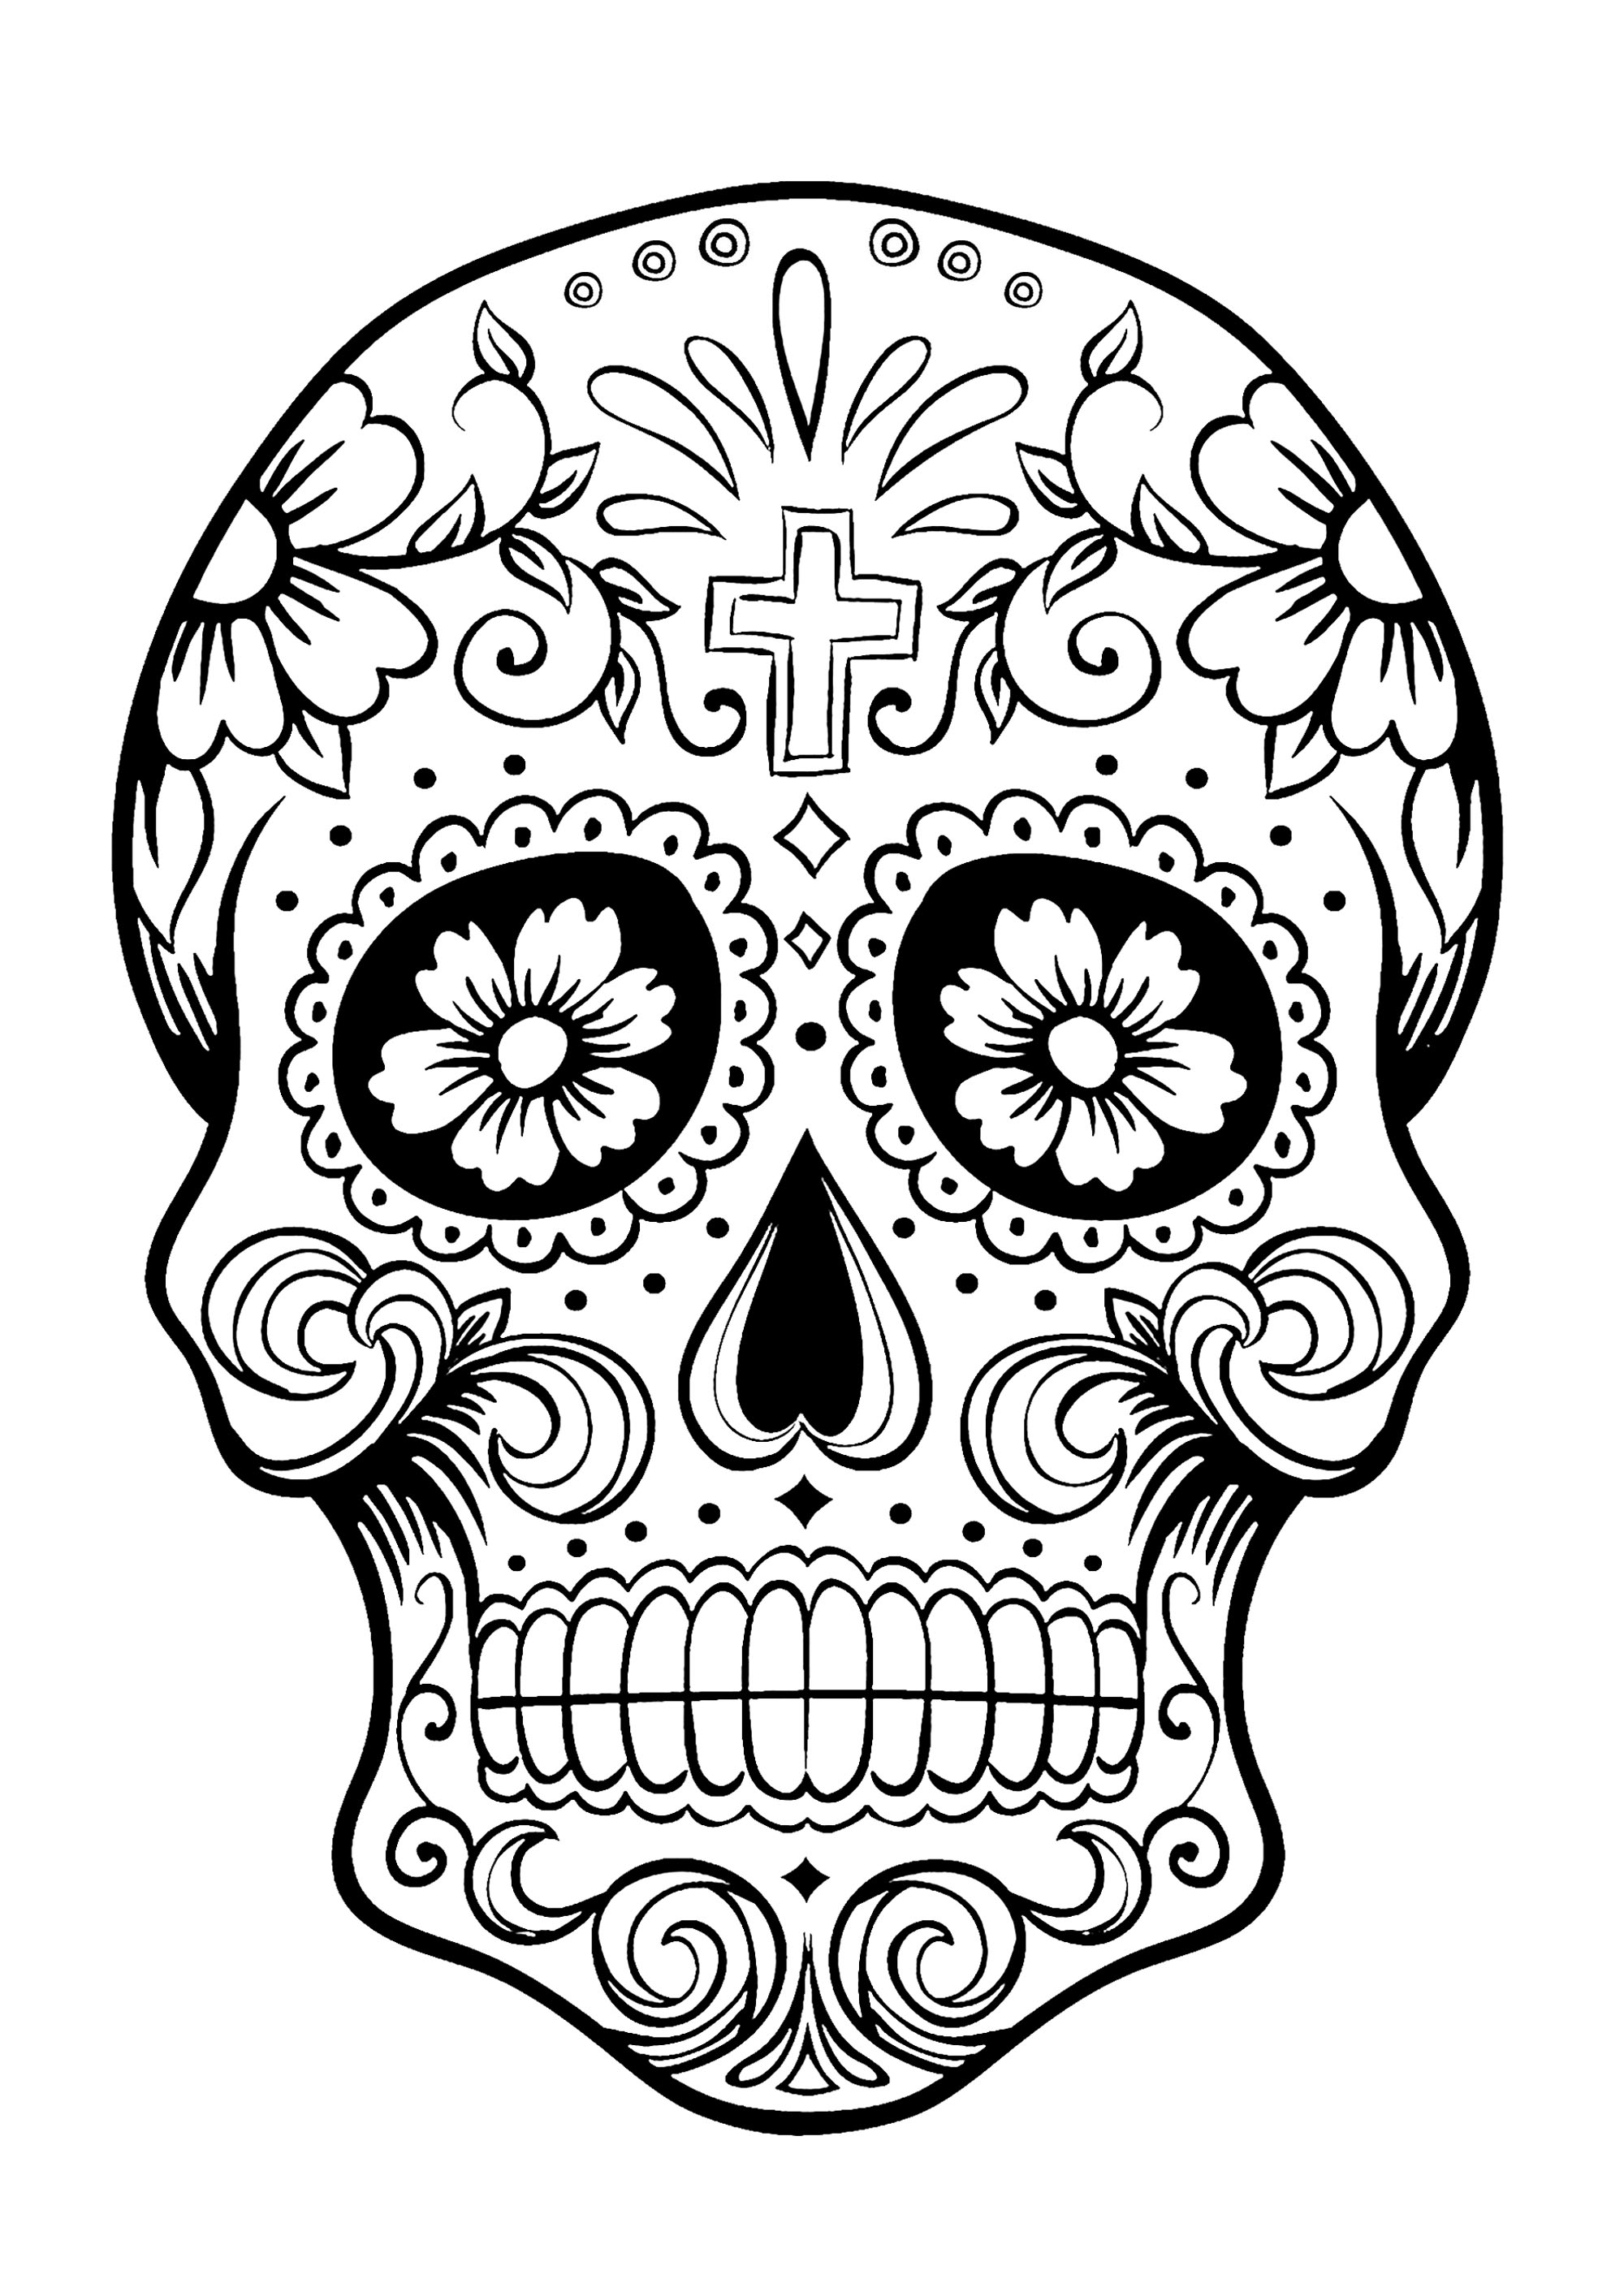 El Día de los Muertos / Day of the dead coloring page : Skull - 3